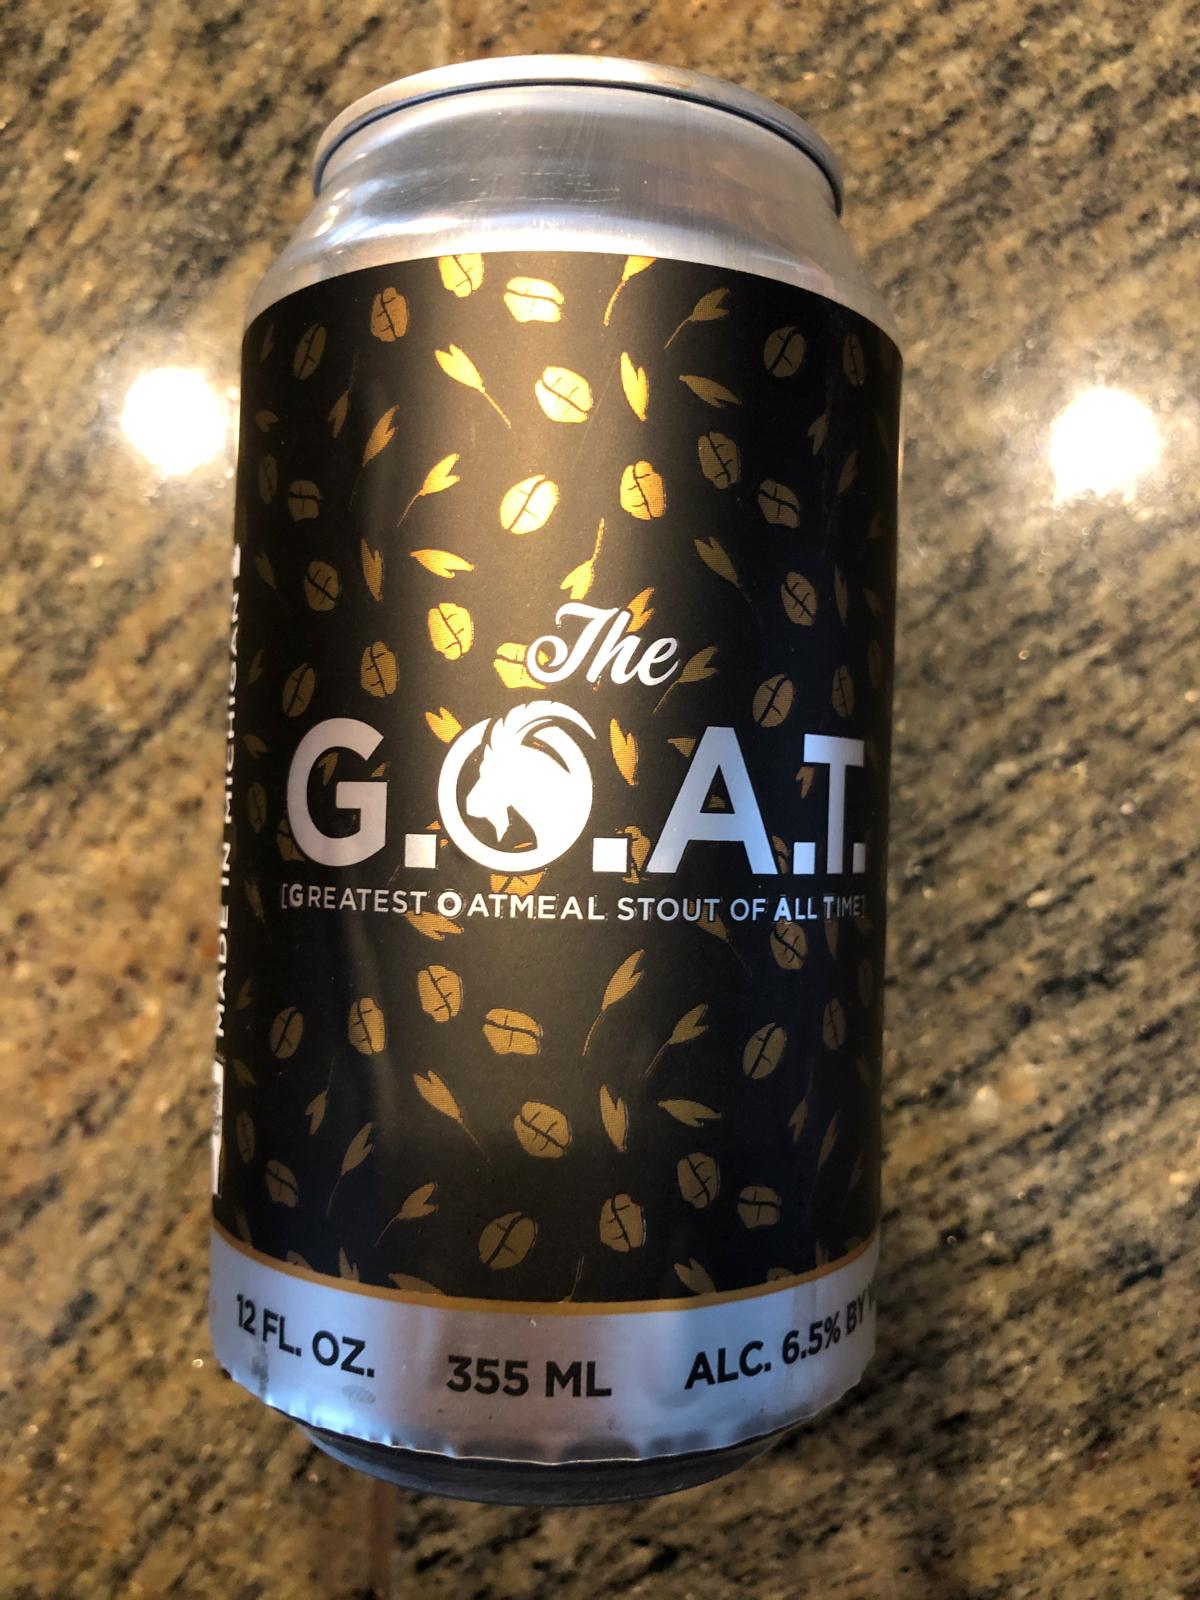 The G.O.A.T.